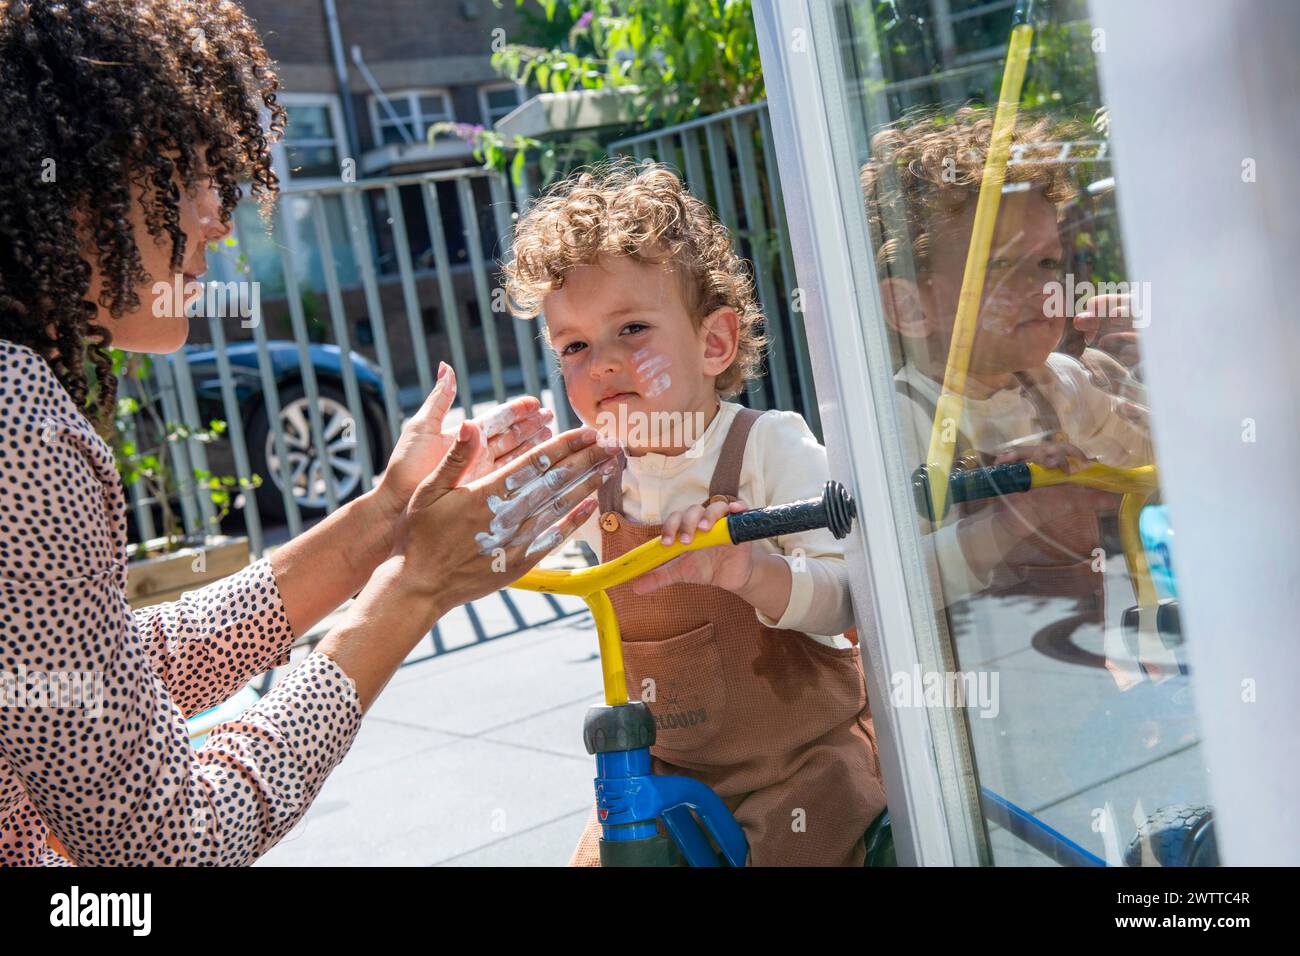 Ein Kind beobachtet aufgeregt durch eine Glastür, während ein Erwachsener an einem sonnigen Tag Gesten macht. Stockfoto